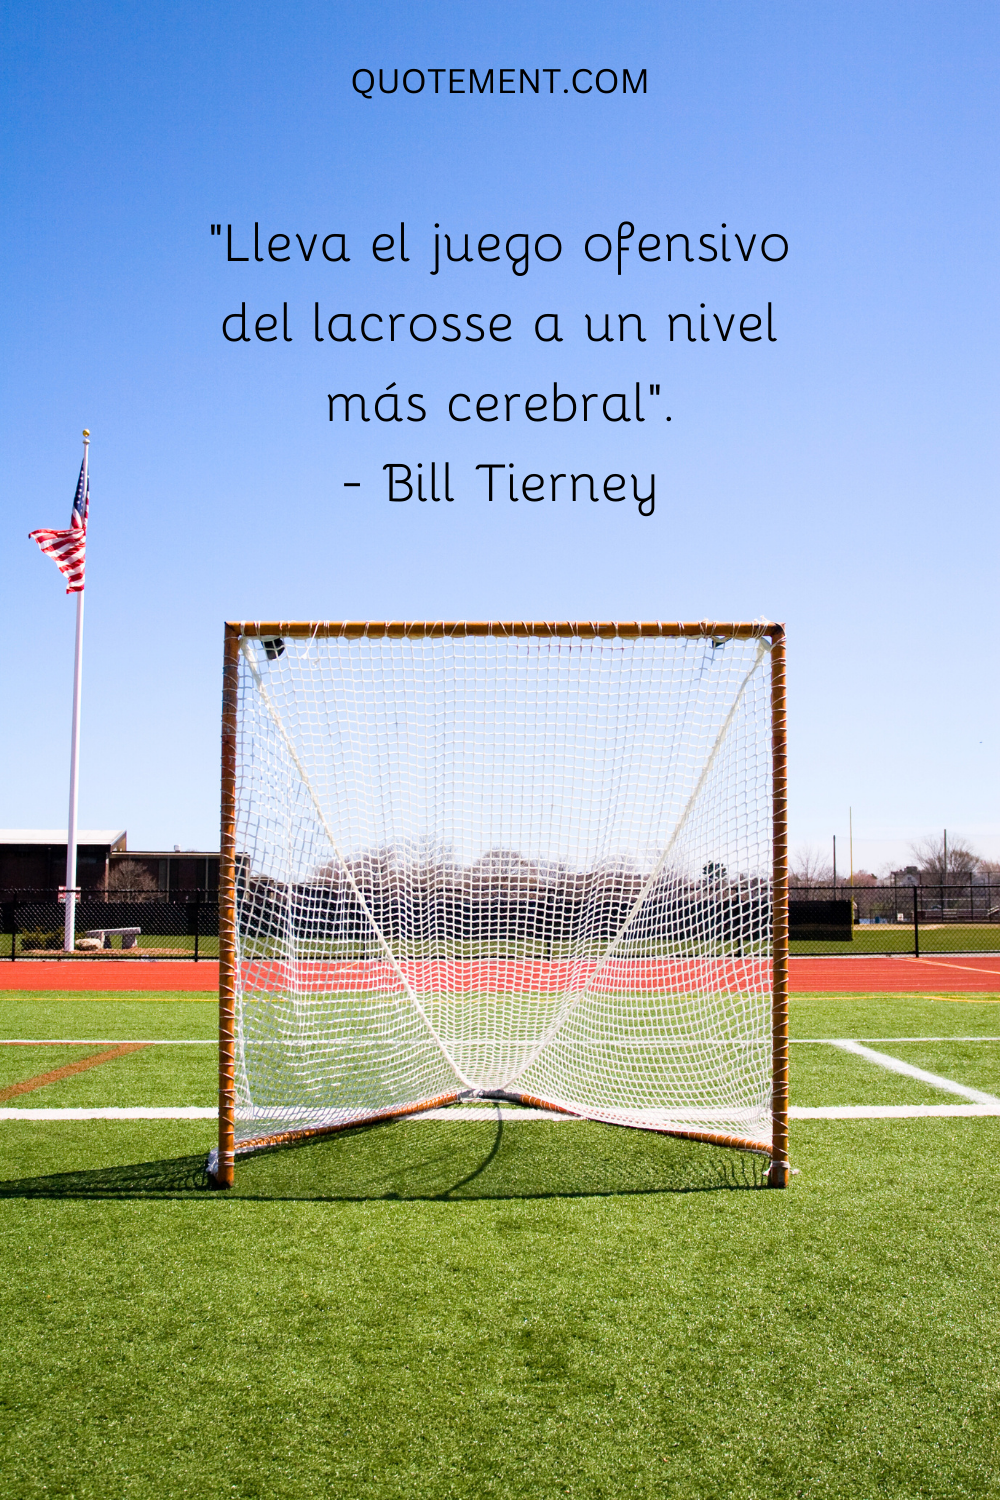 "Lleva el juego ofensivo del lacrosse a un nivel más cerebral". - Bill Tierney